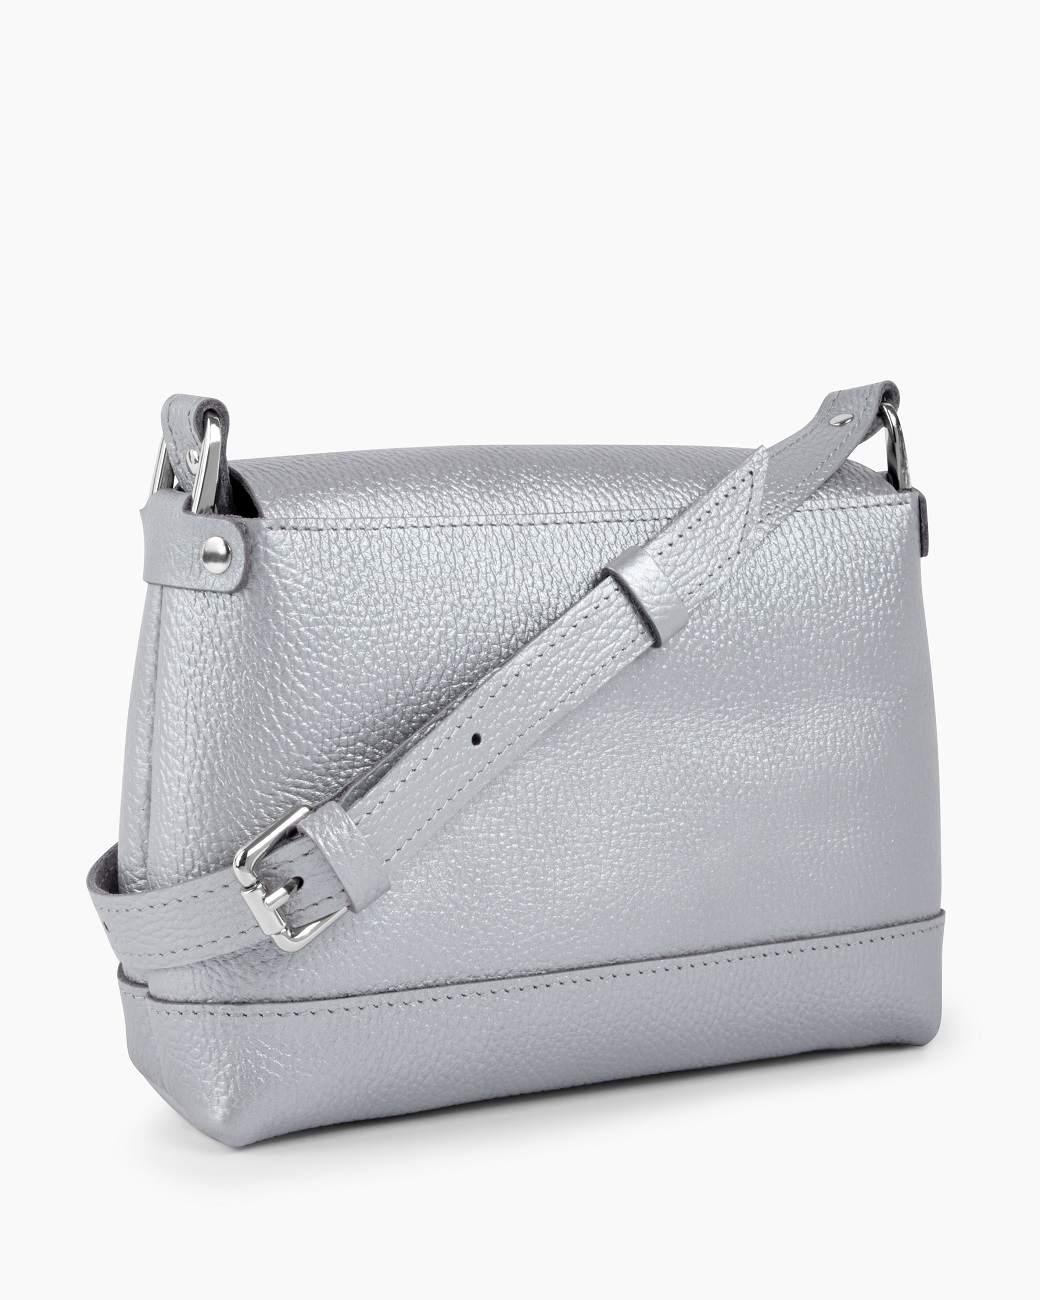 Женская сумка через плечо из натуральной кожи серебряная A003 silver grain